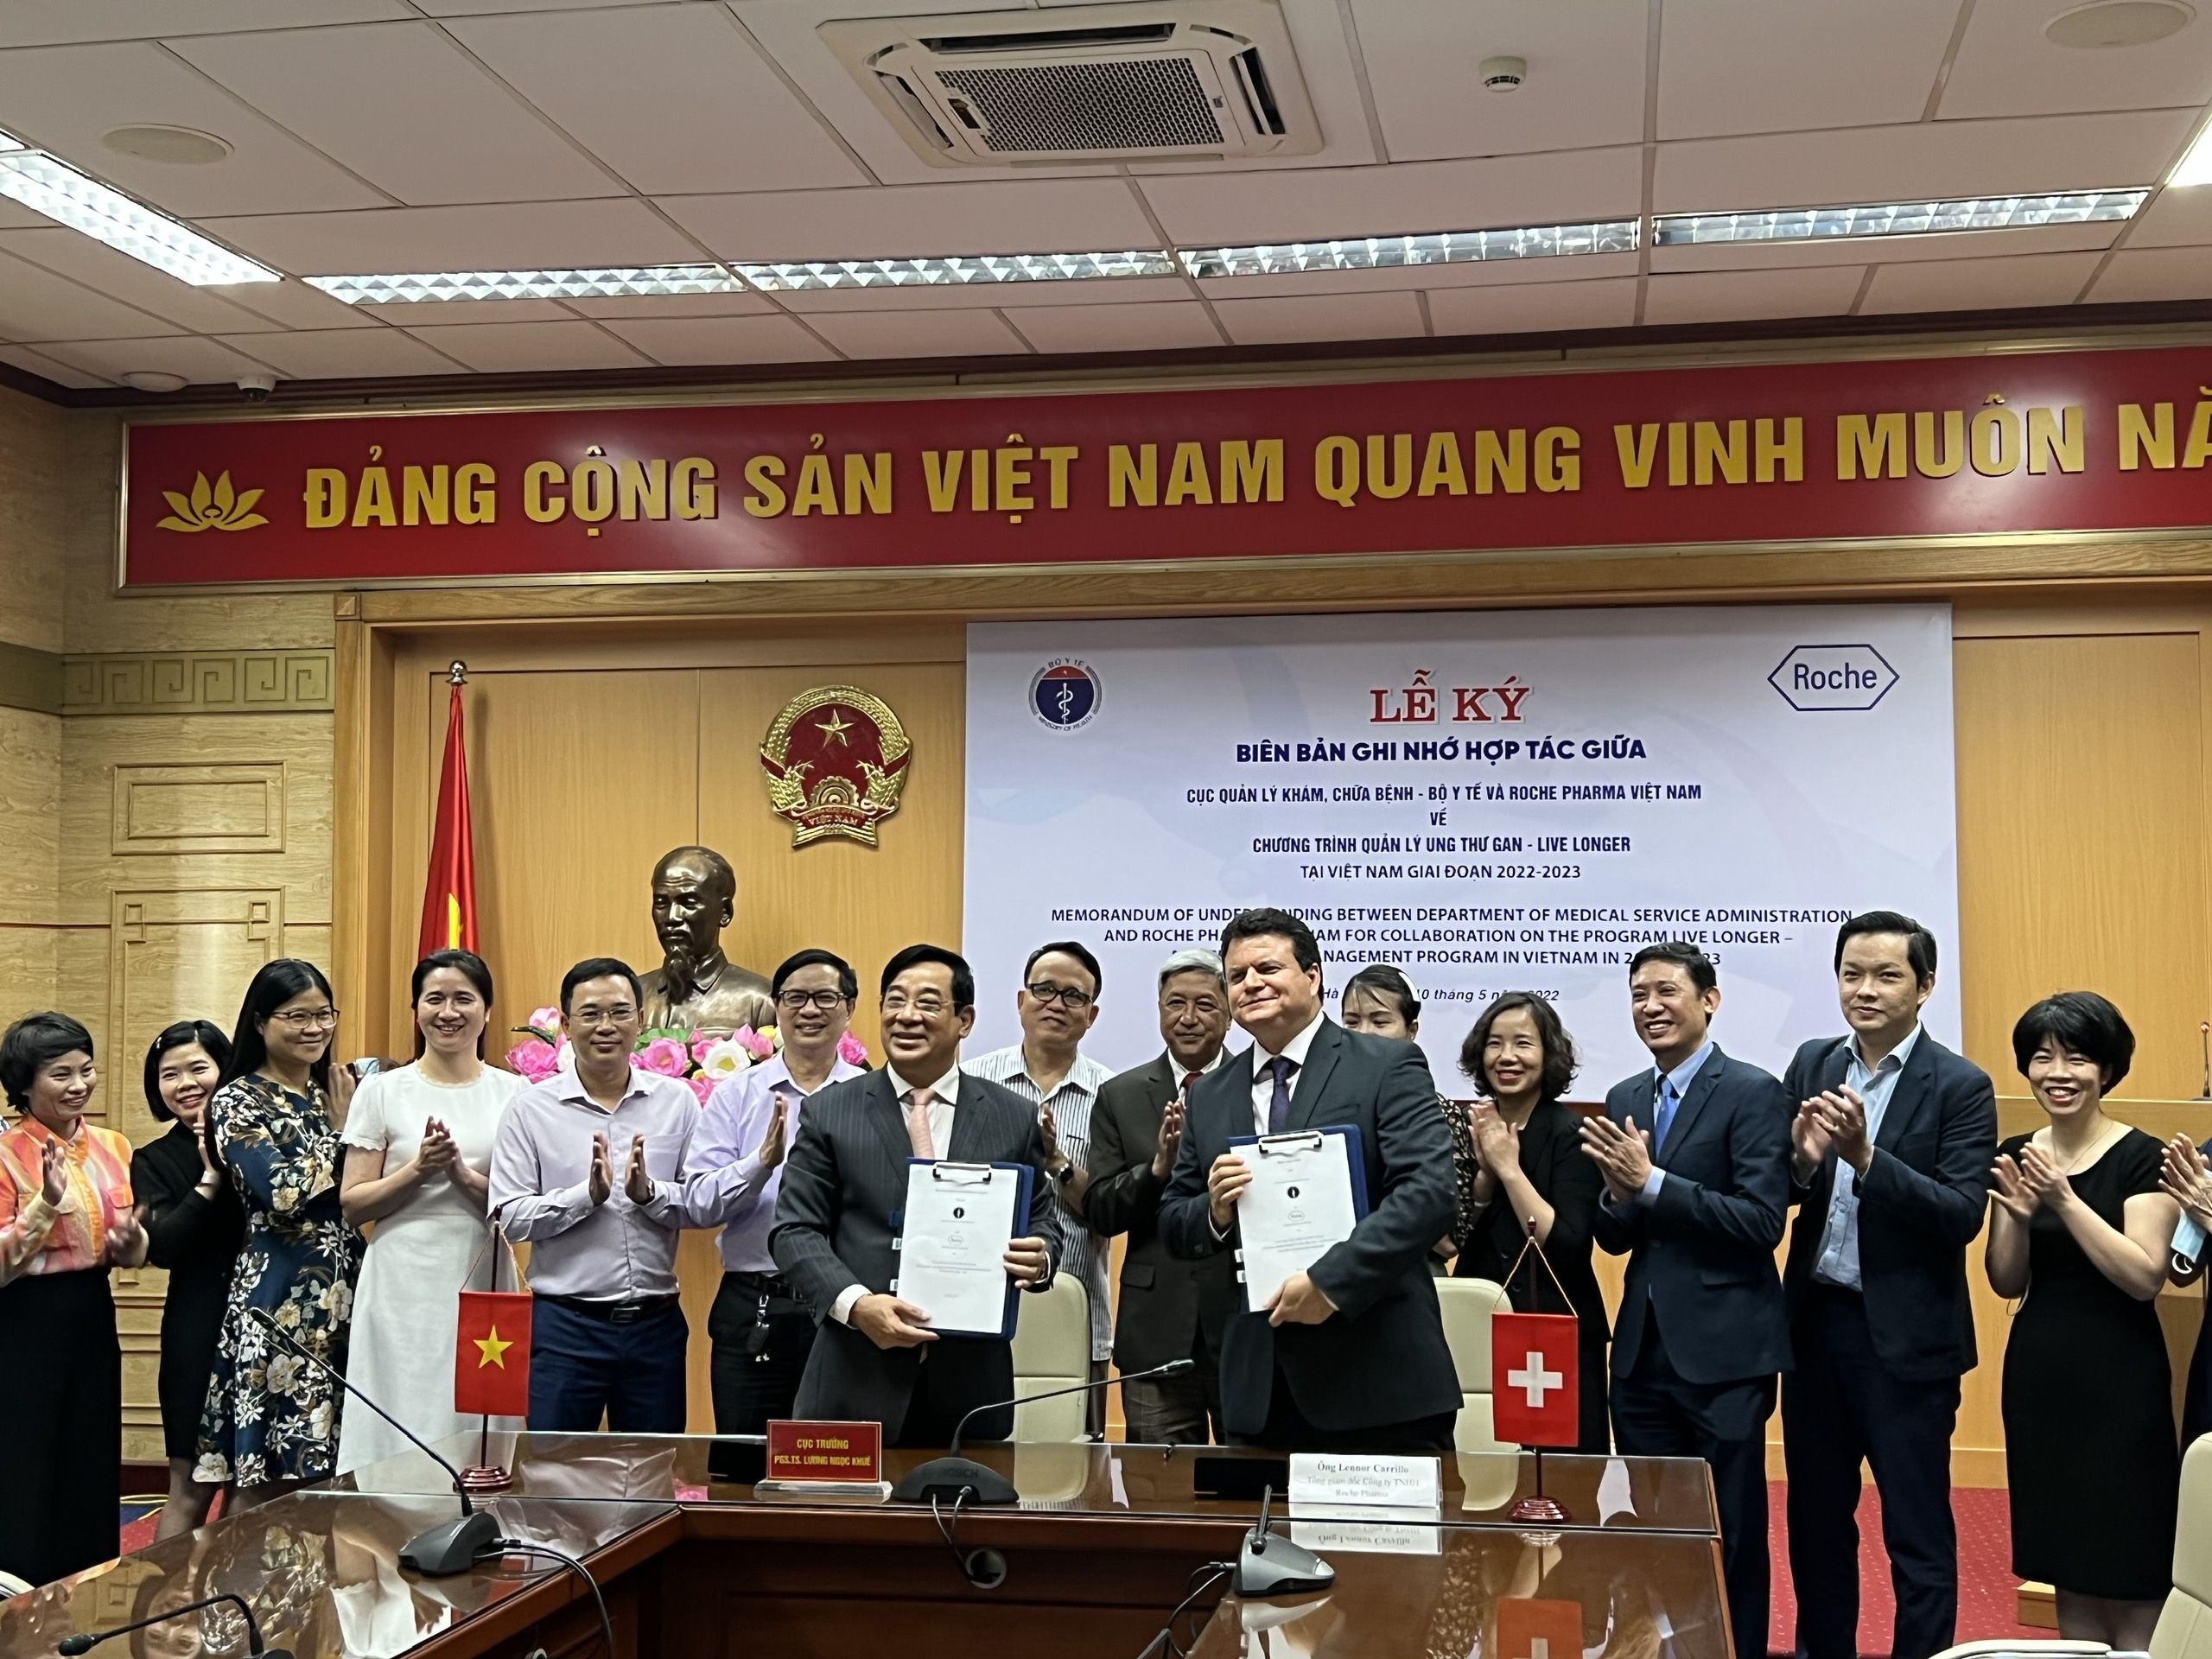 Ký biên bản ghi nhớ hợp tác về Chương trình Quản lý ung thư gan – Live Longer tại Việt Nam